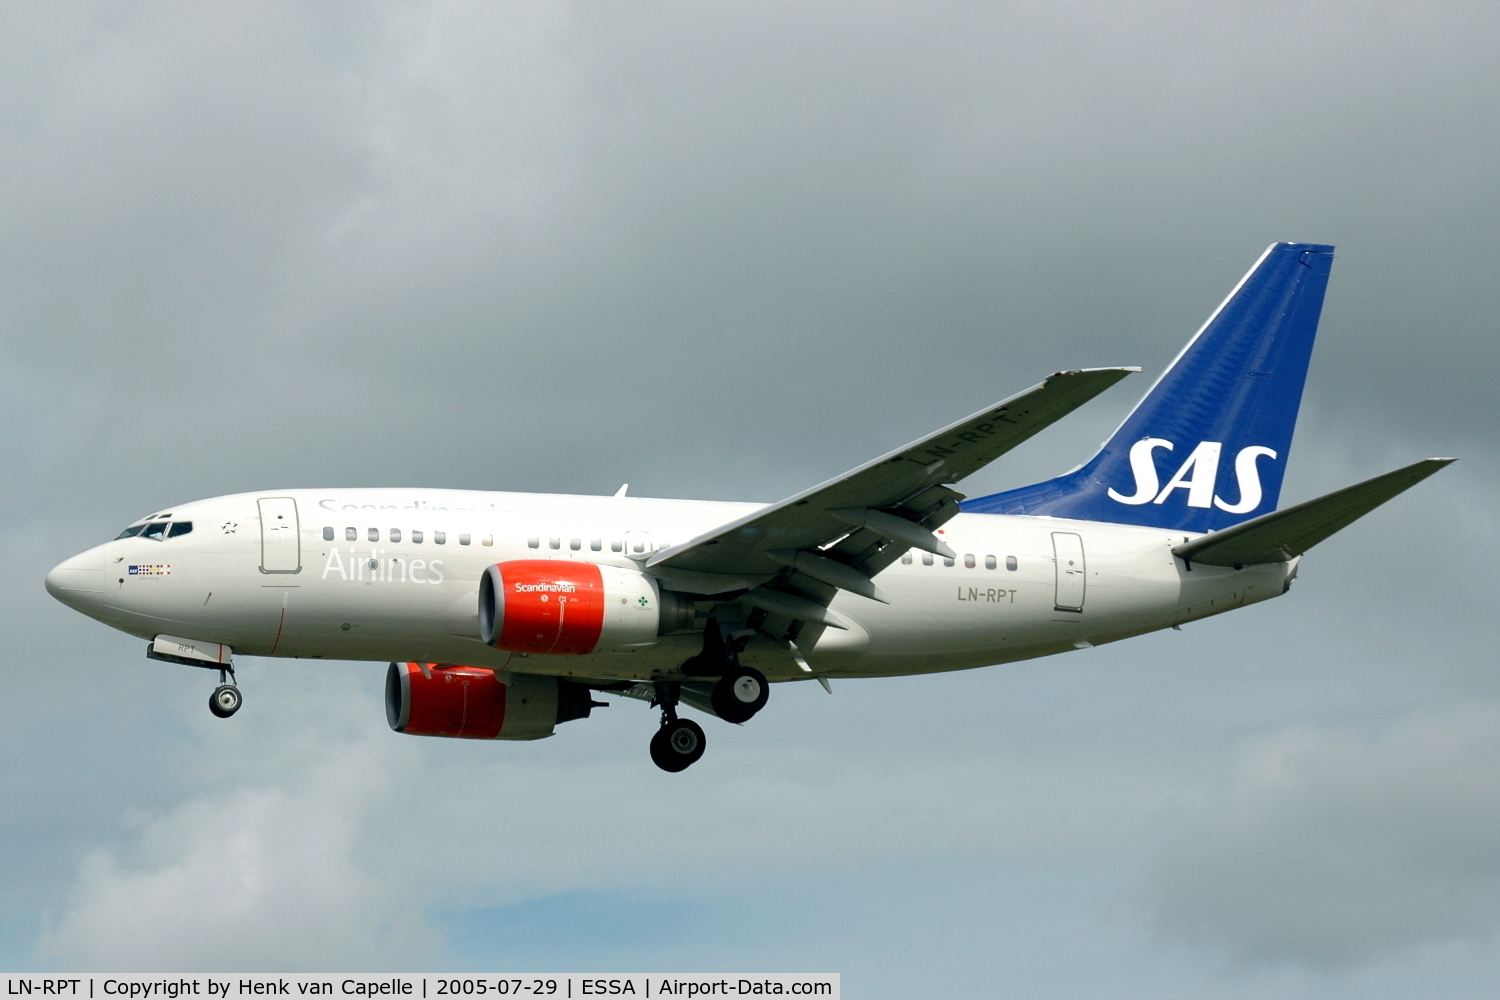 LN-RPT, 1998 Boeing 737-683 C/N 28299, Boeing 737-600 of Scandinavian Airlines approaching Stockholm Arlanda airport.